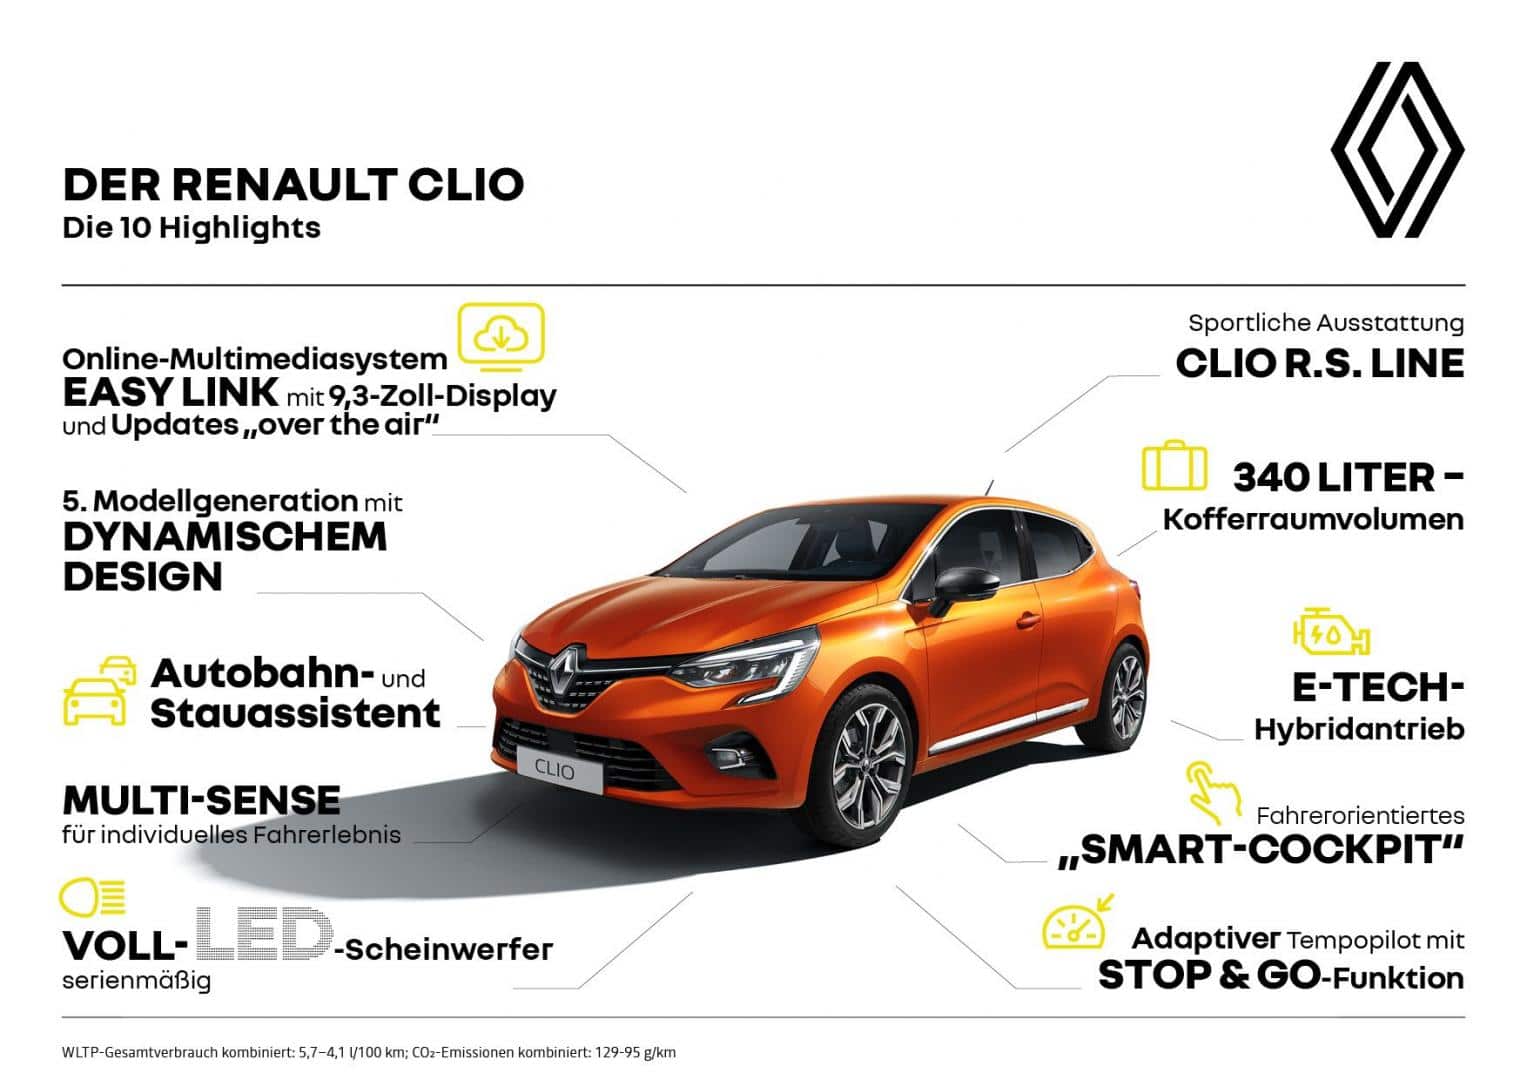 Der neue Renault CLIO - Autohaus Schouren Brüggen-Bracht